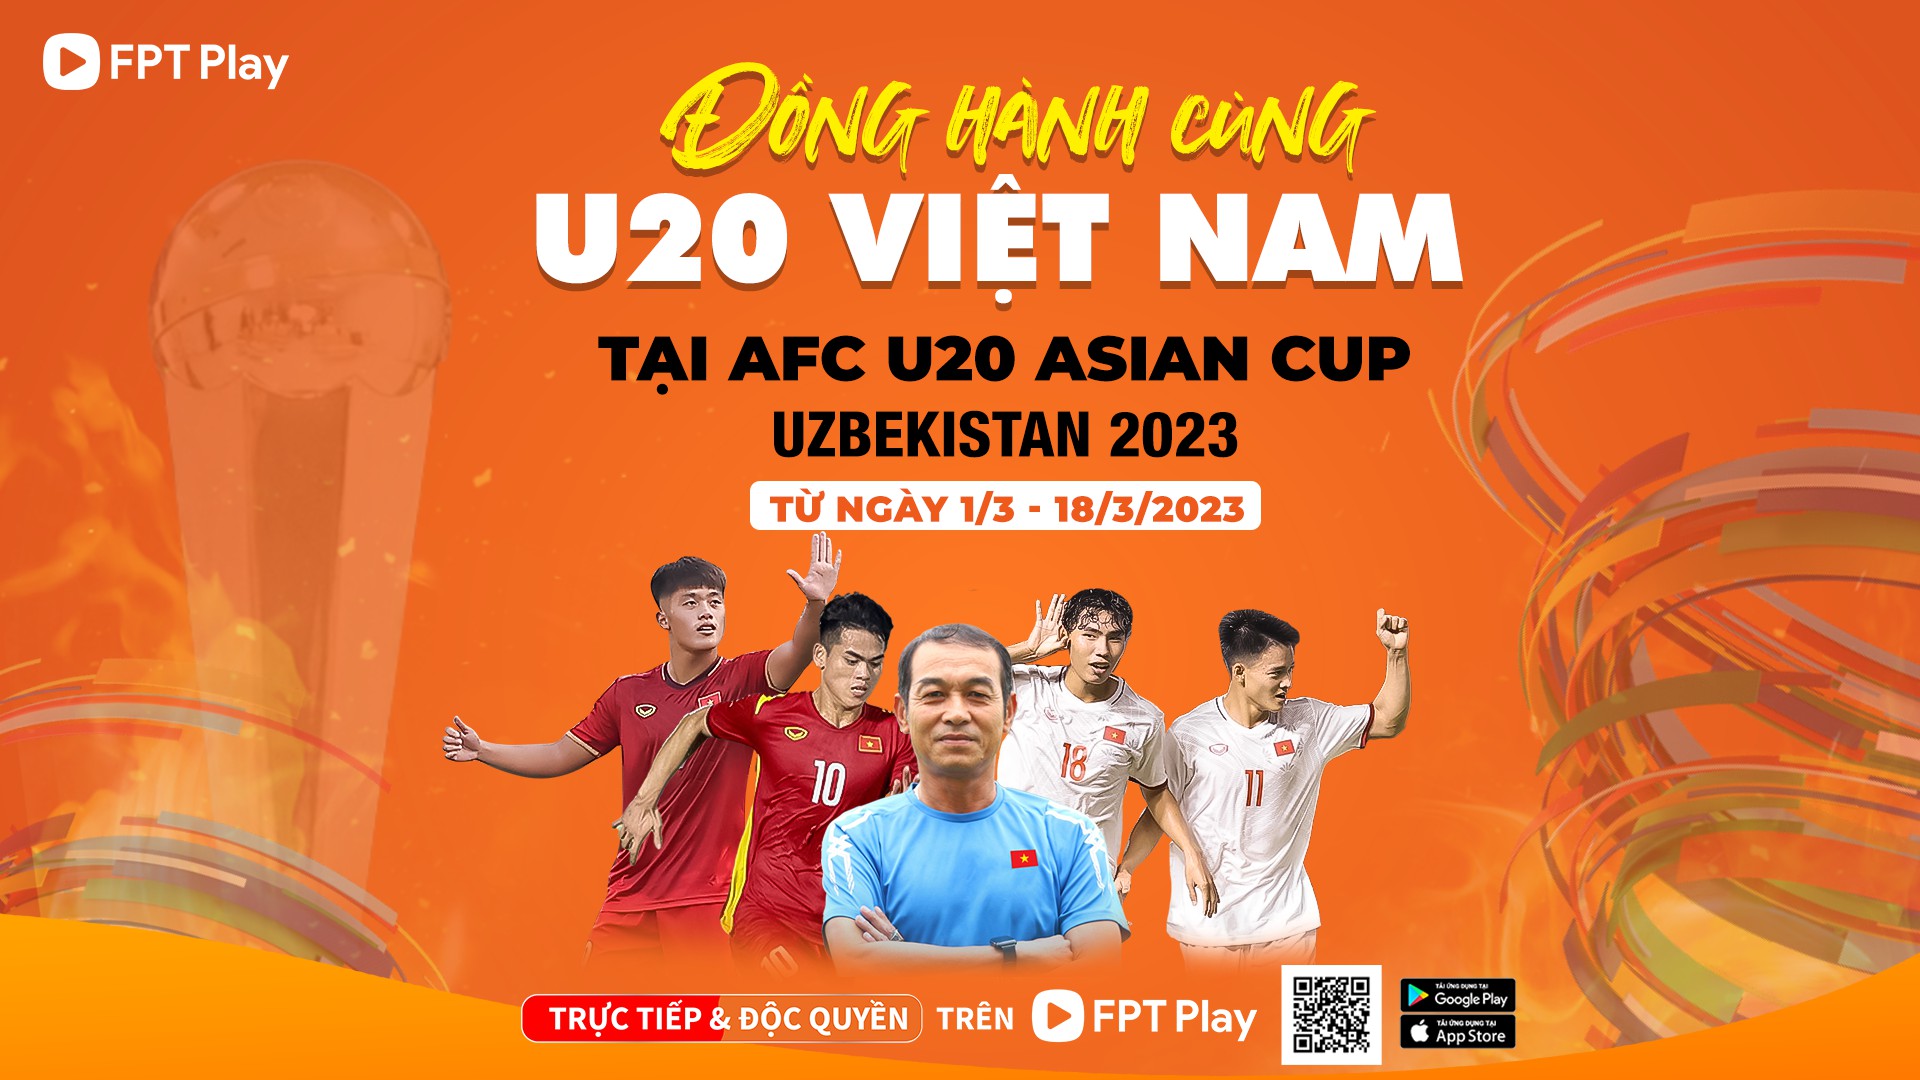 FPT Play là đơn vị nắm bản quyền phát sóng vòng chung kết U20 Châu Á.